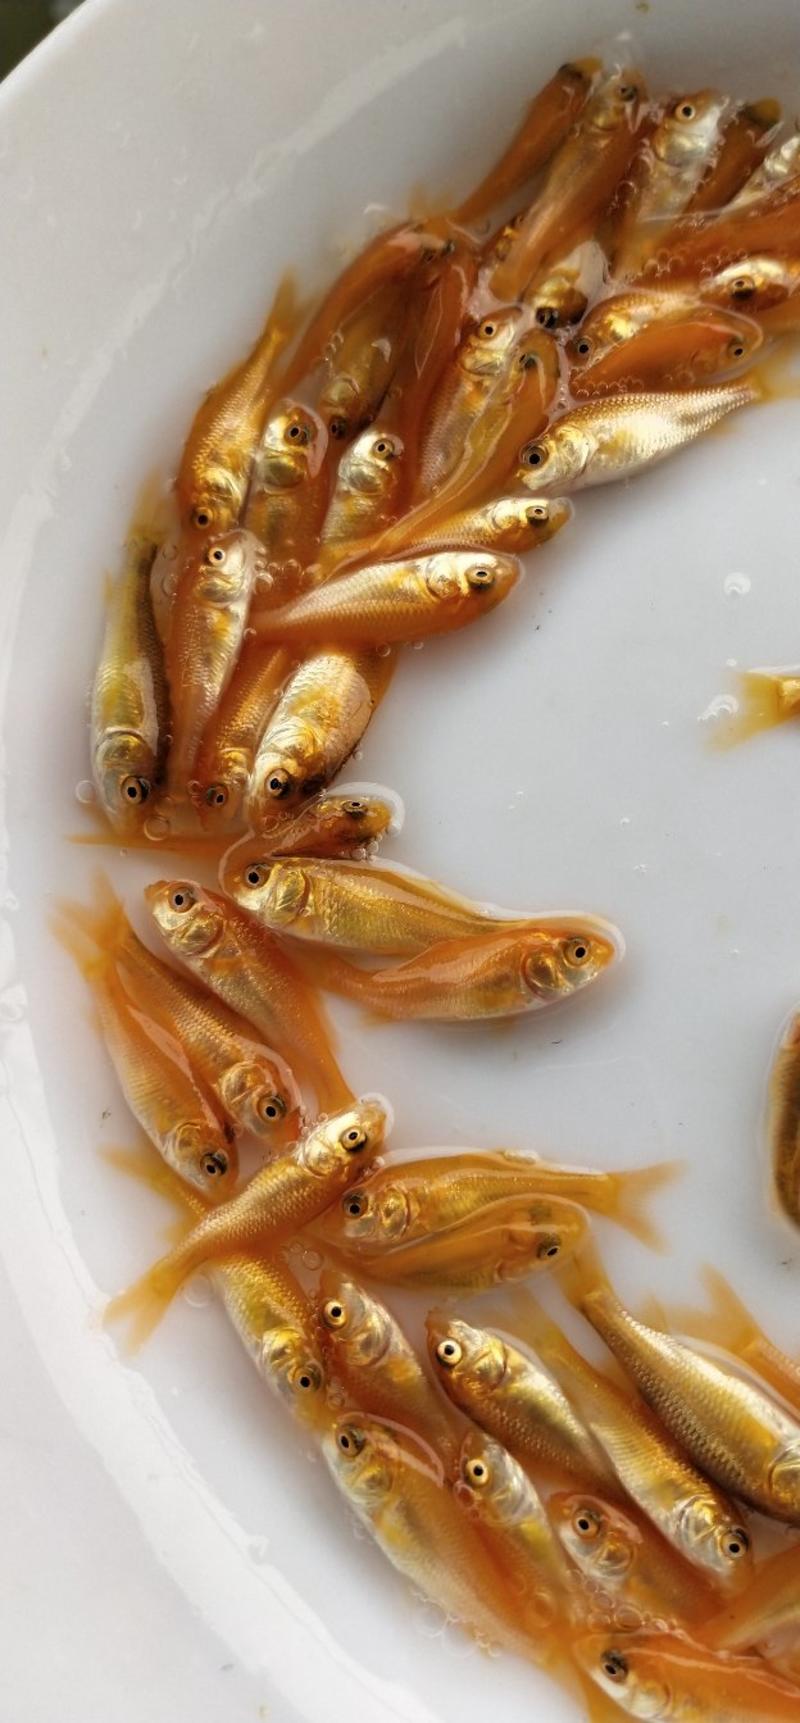 红鲤鱼苗兴国红鲤鱼苗3-4公分产地直供